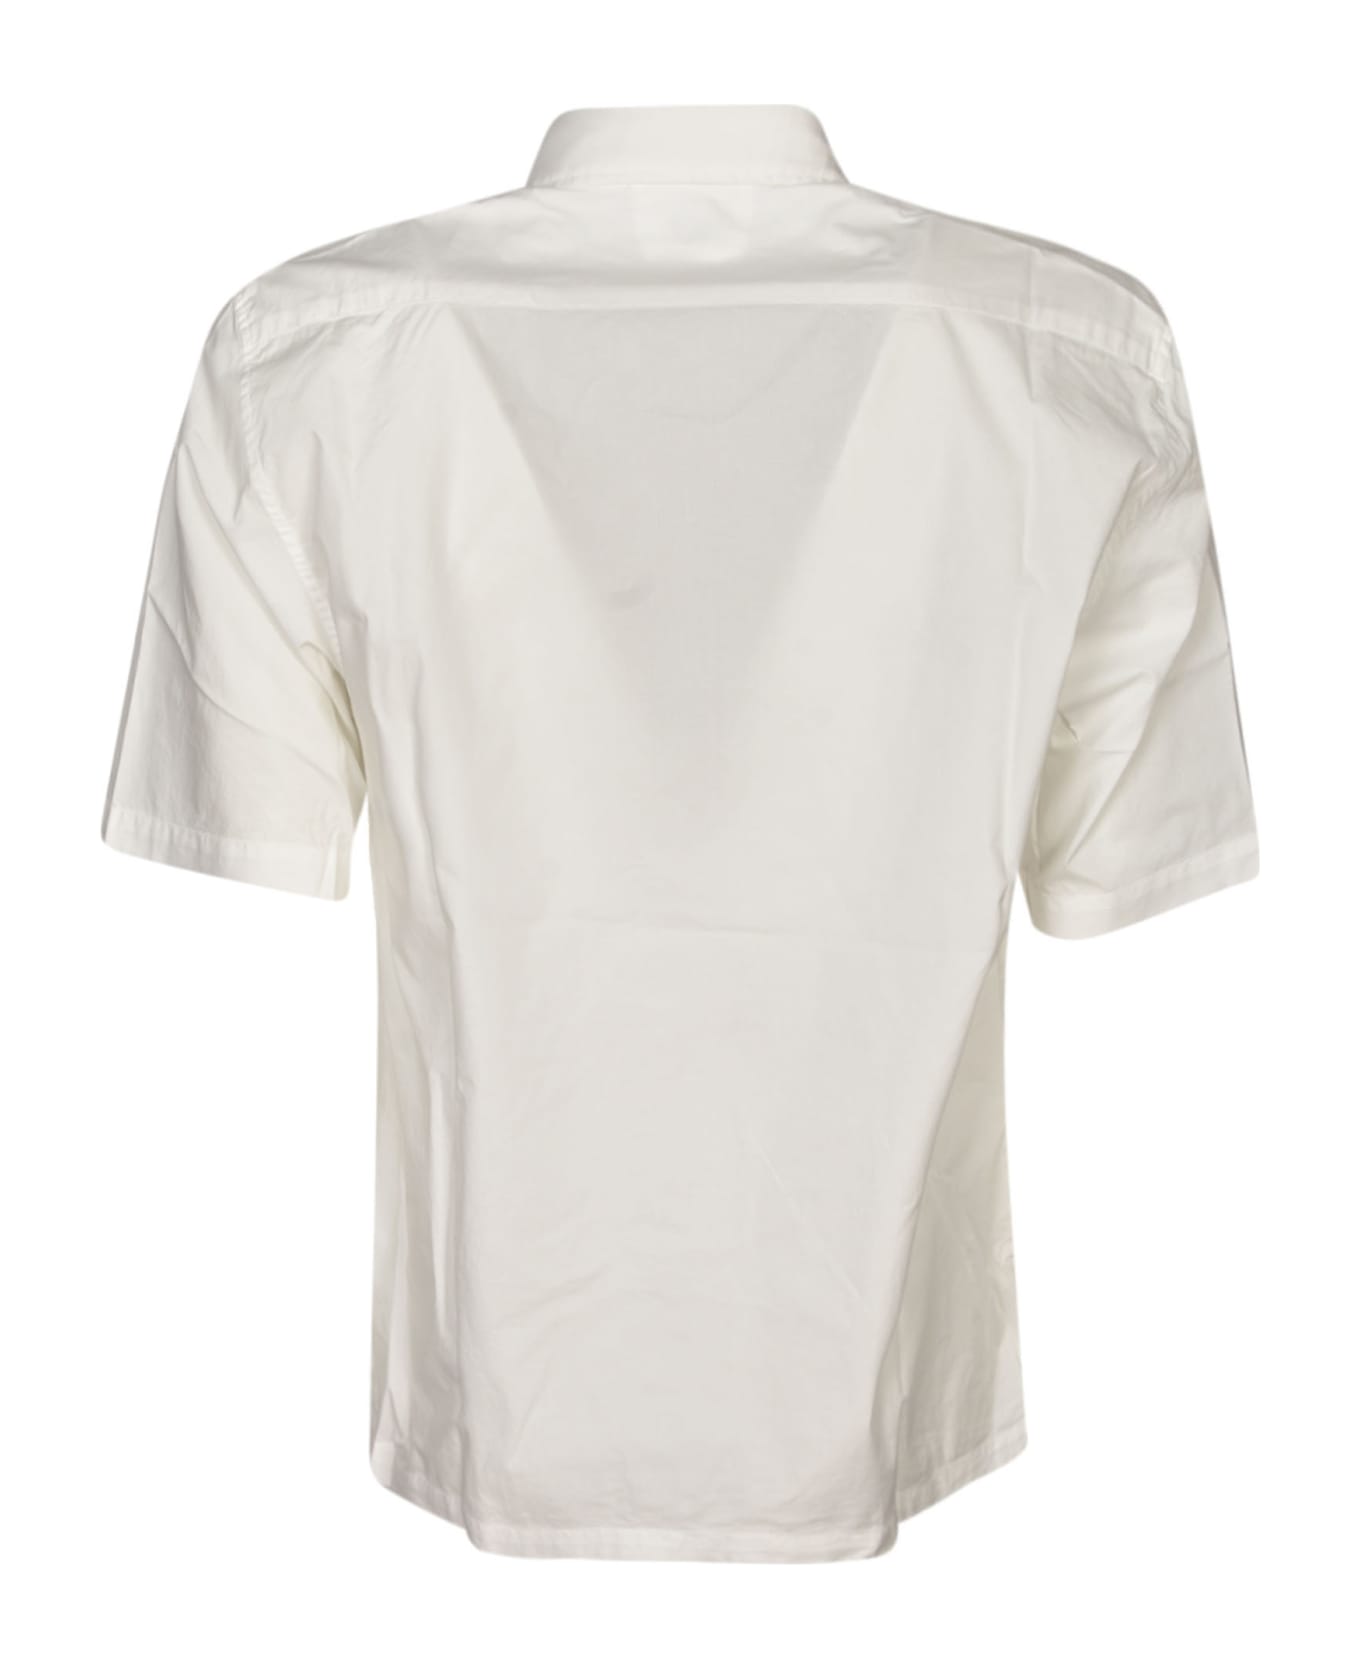 C.P. Company Oversized Pocket Short-sleeved Shirt - Gauze White